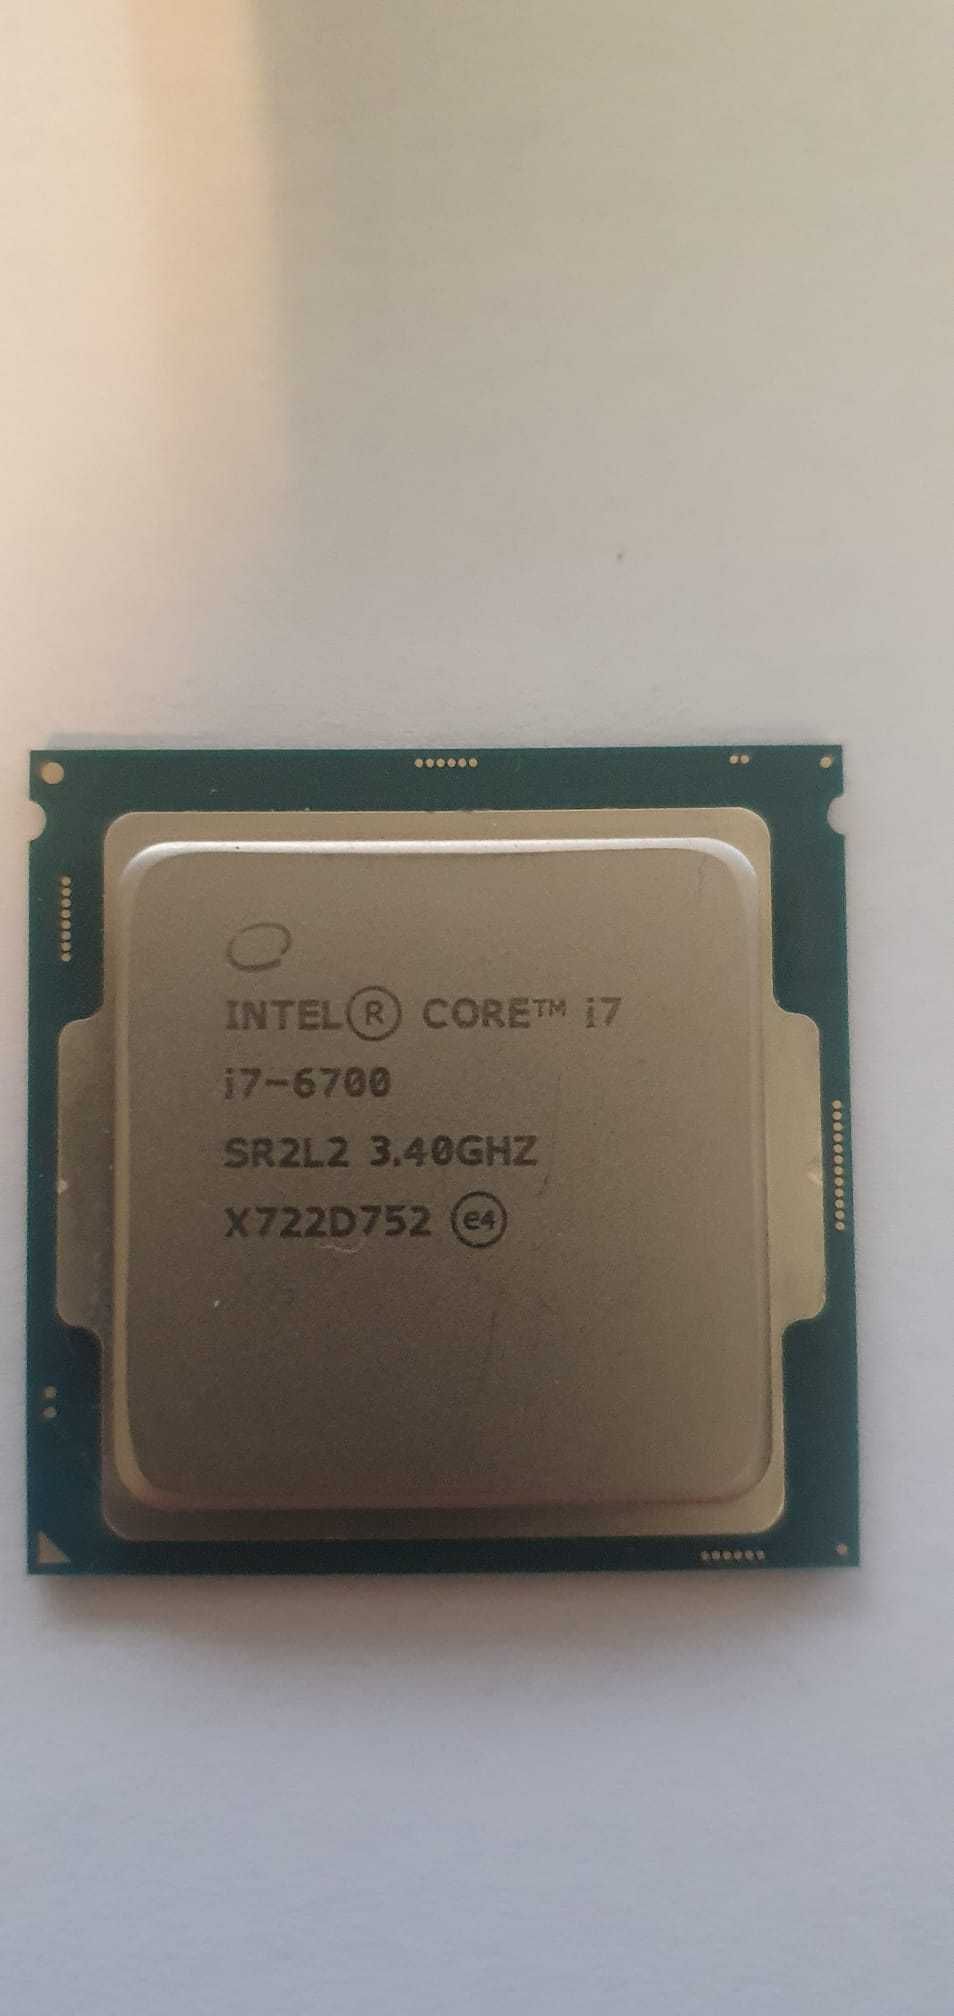 Procesor Intel Core i7 6700 sk 1151, cooler, pasta